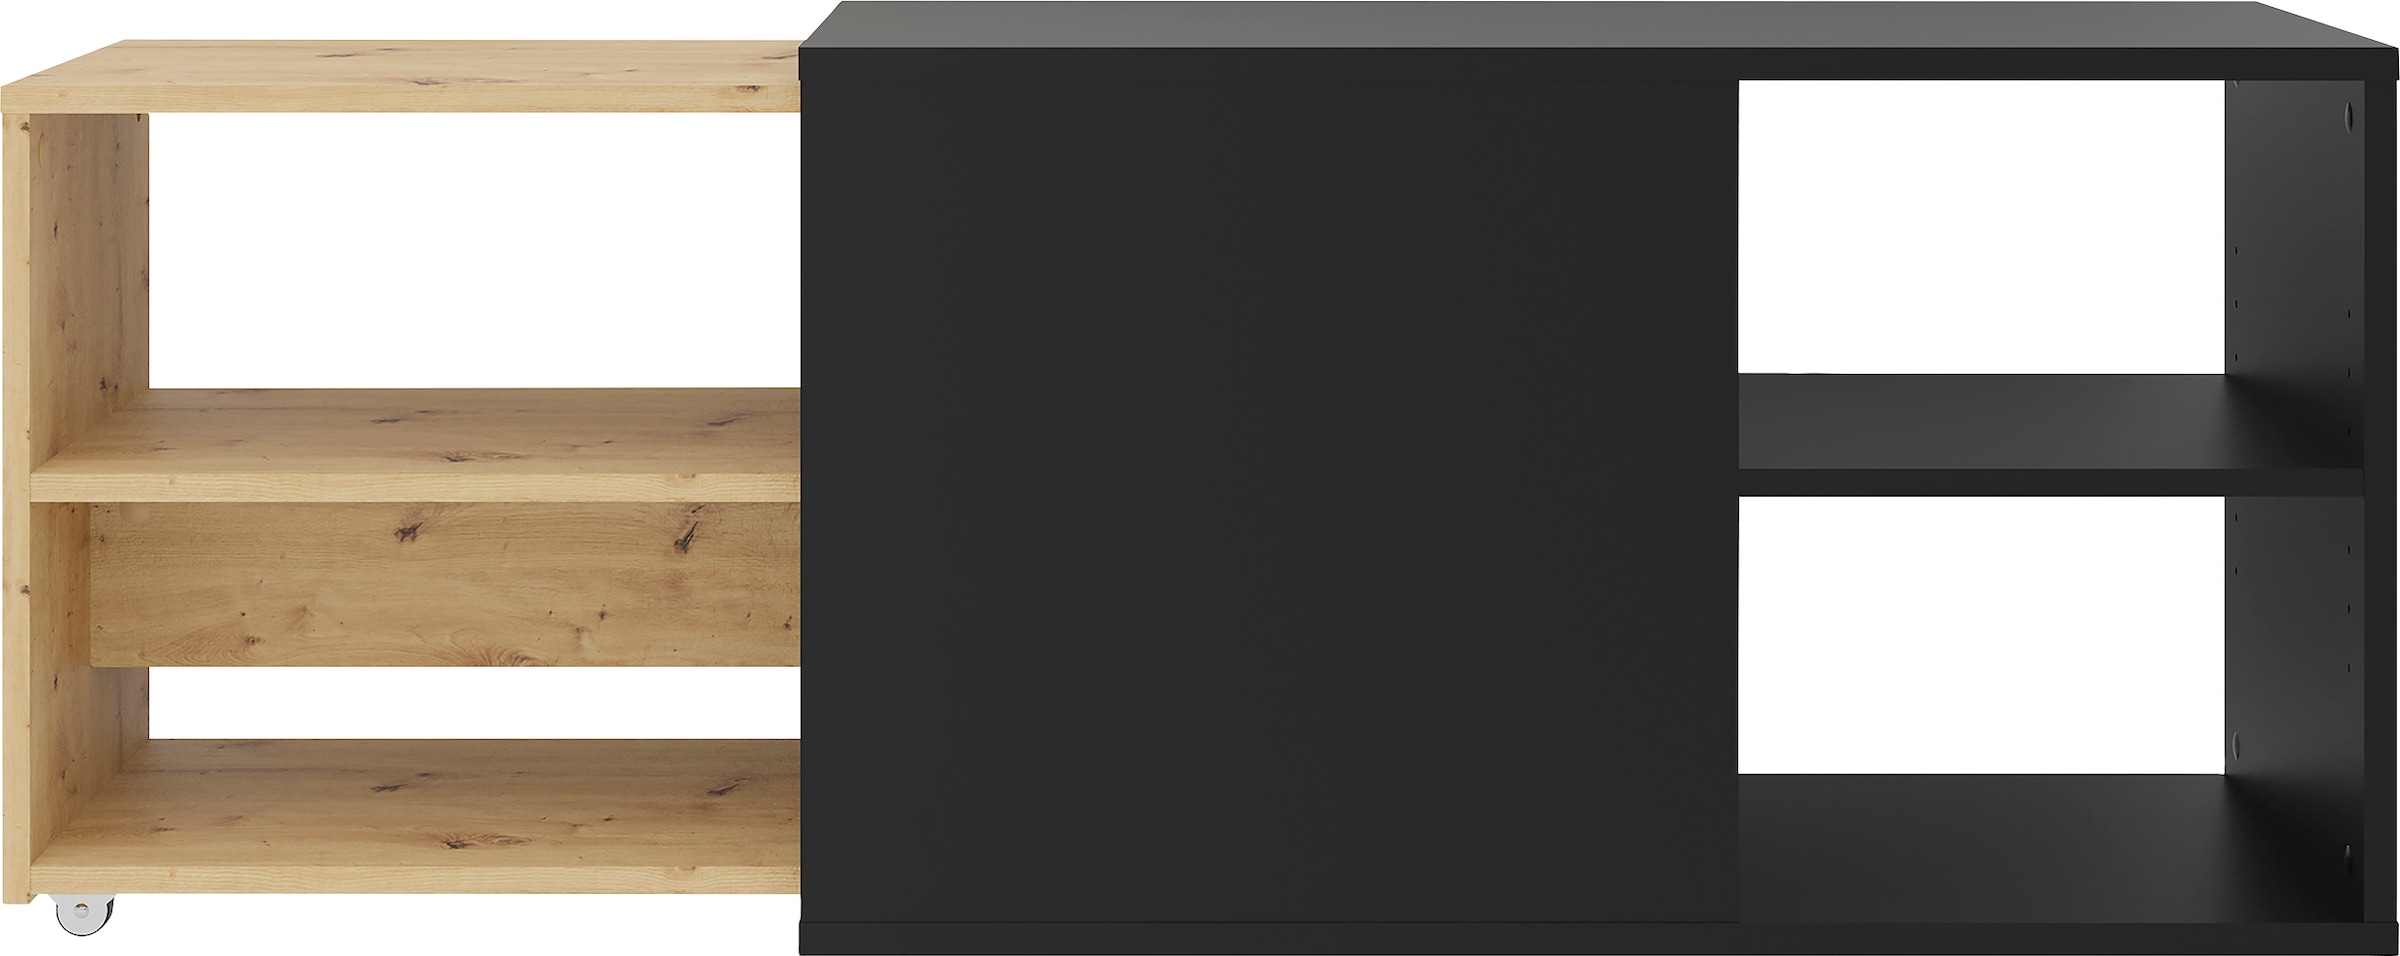 FMD TV-Board »Slide«, ausziehbar auf 129 cm